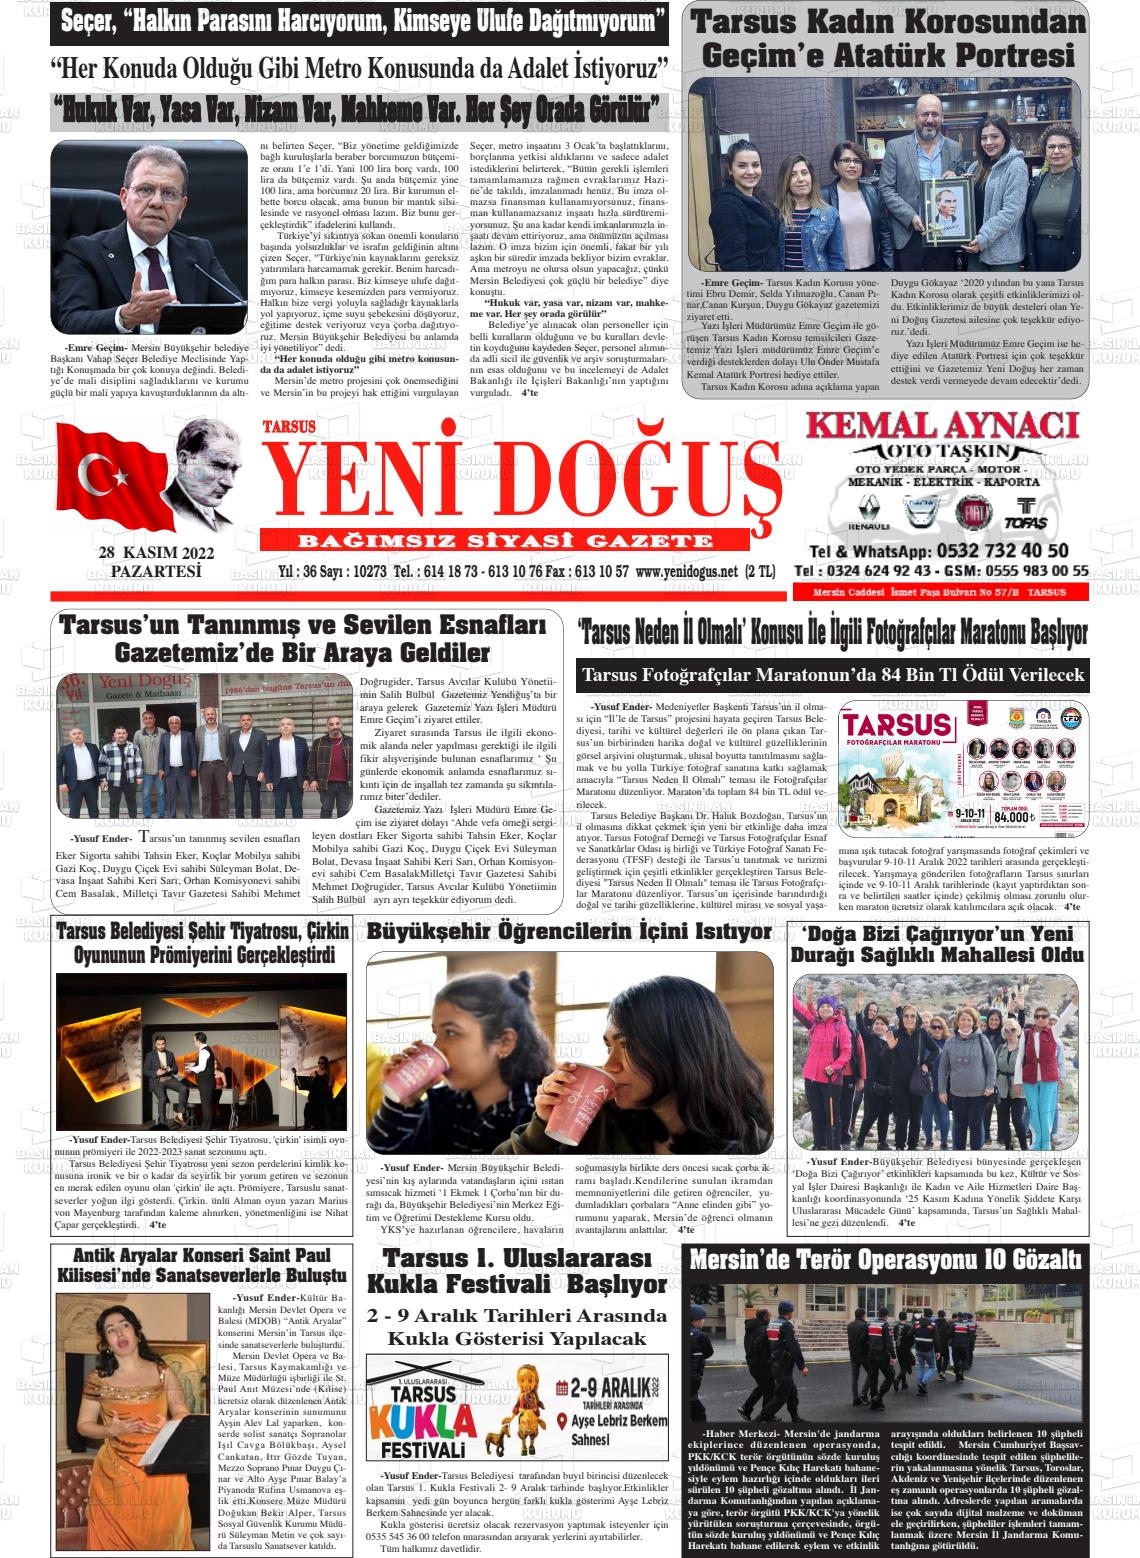 28 Kasım 2022 Tarsus Yeni Doğuş Gazete Manşeti